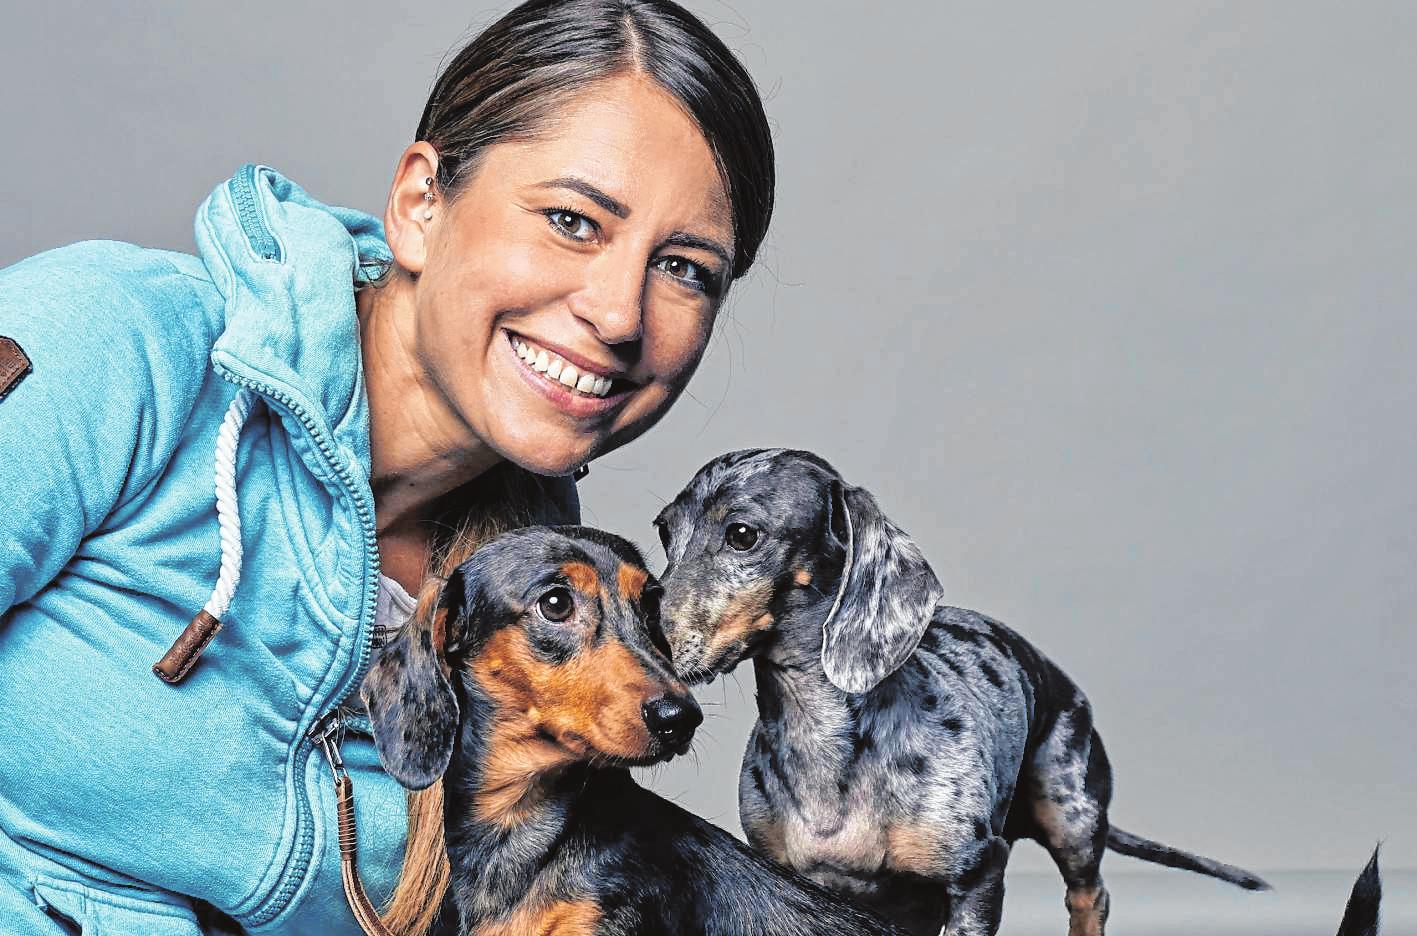 Erfahrene Trainerin: Nadine Bihn hat in ihrer Hundeschule häufig das Thema „Hund und Katze“ auf der Tagesordnung. Einige Regeln und vor allem Geduld helfen, die beiden Vierbeiner aneinander zu gewöhnen. BILD: NADINE BIHN